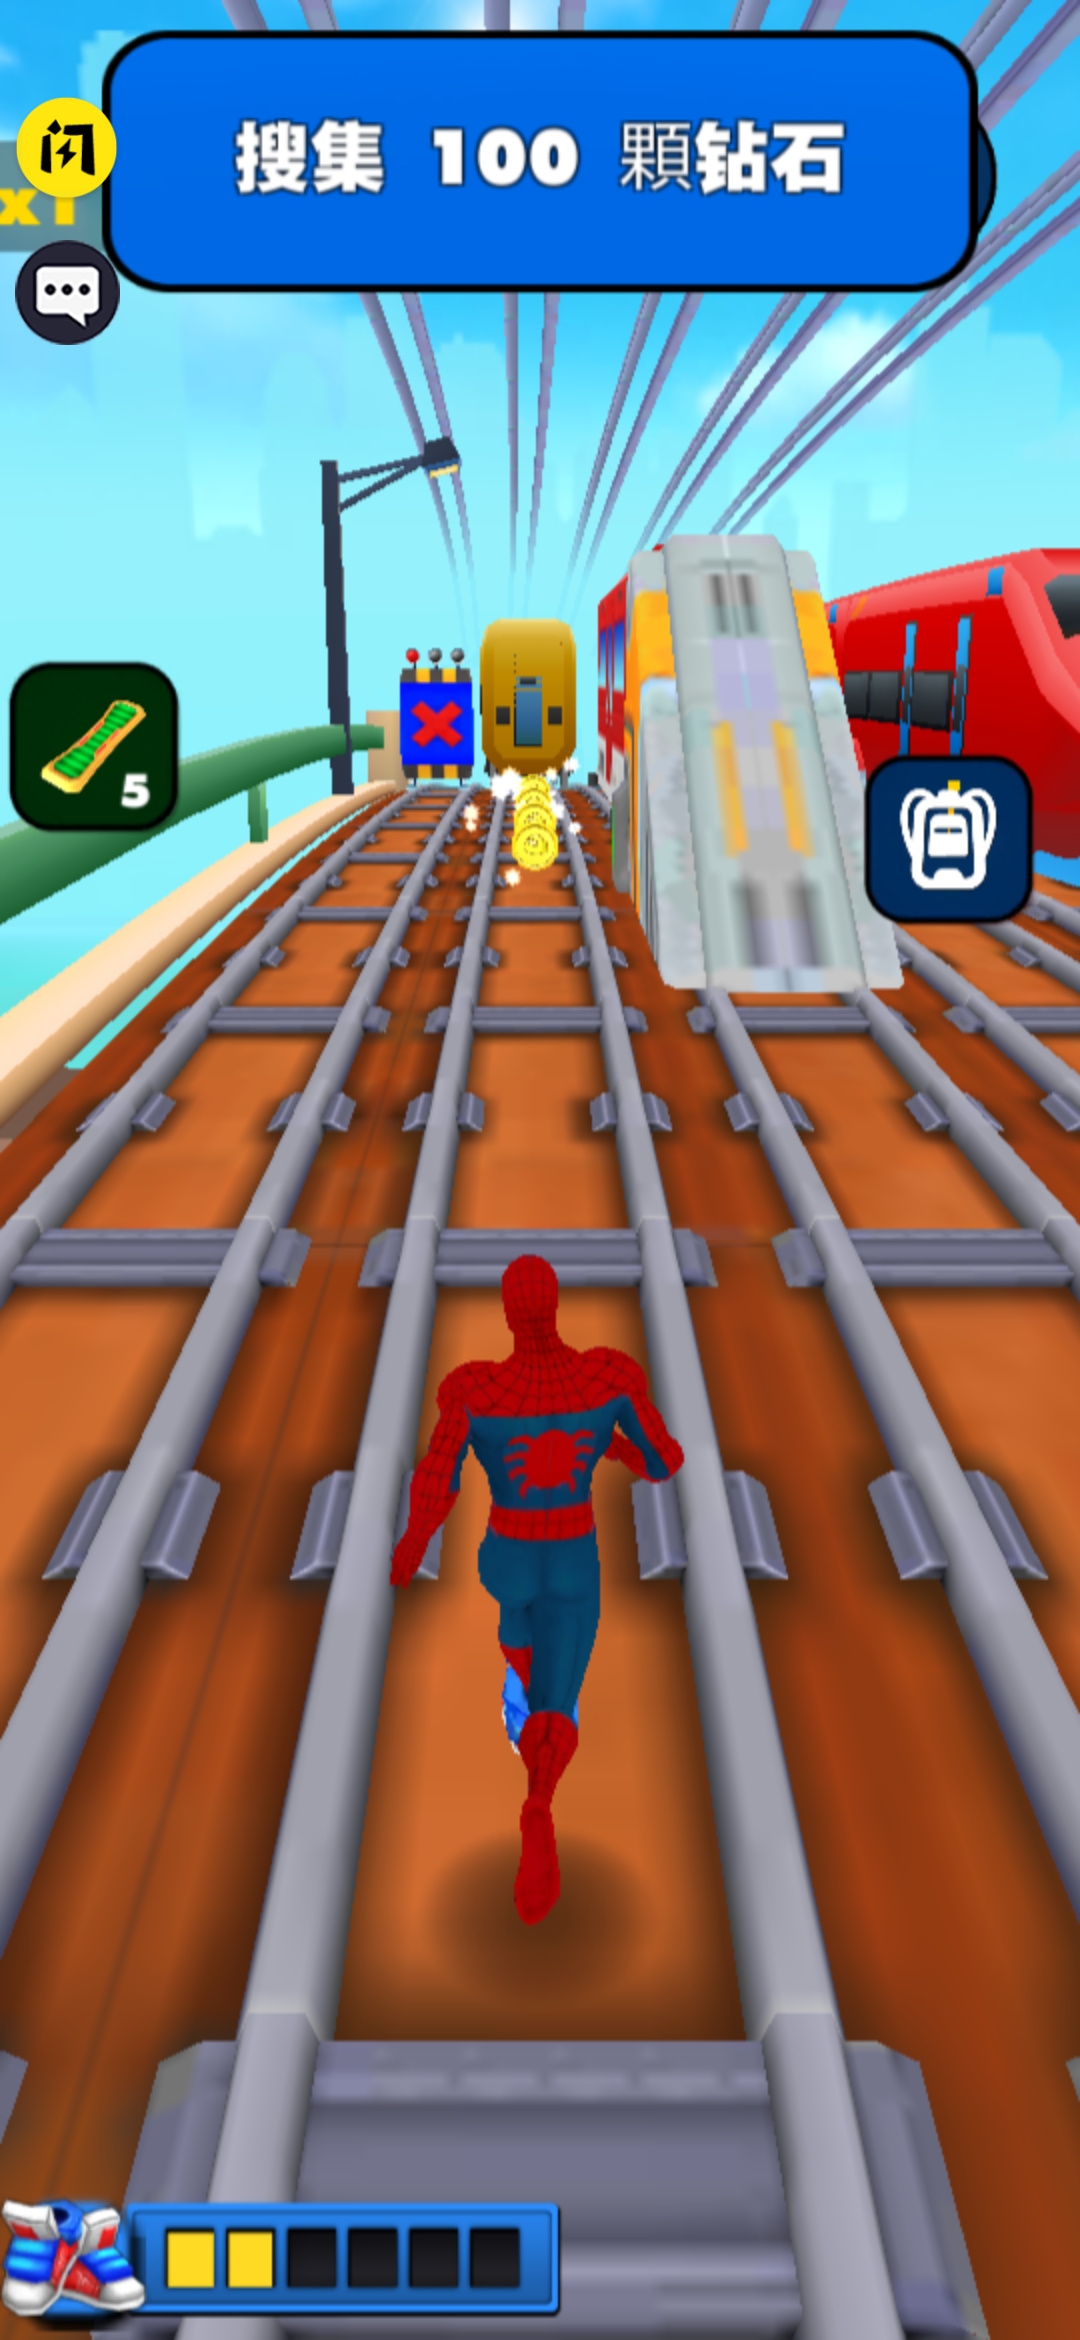 蜘蛛人归来游戏下载安装手机版图片1